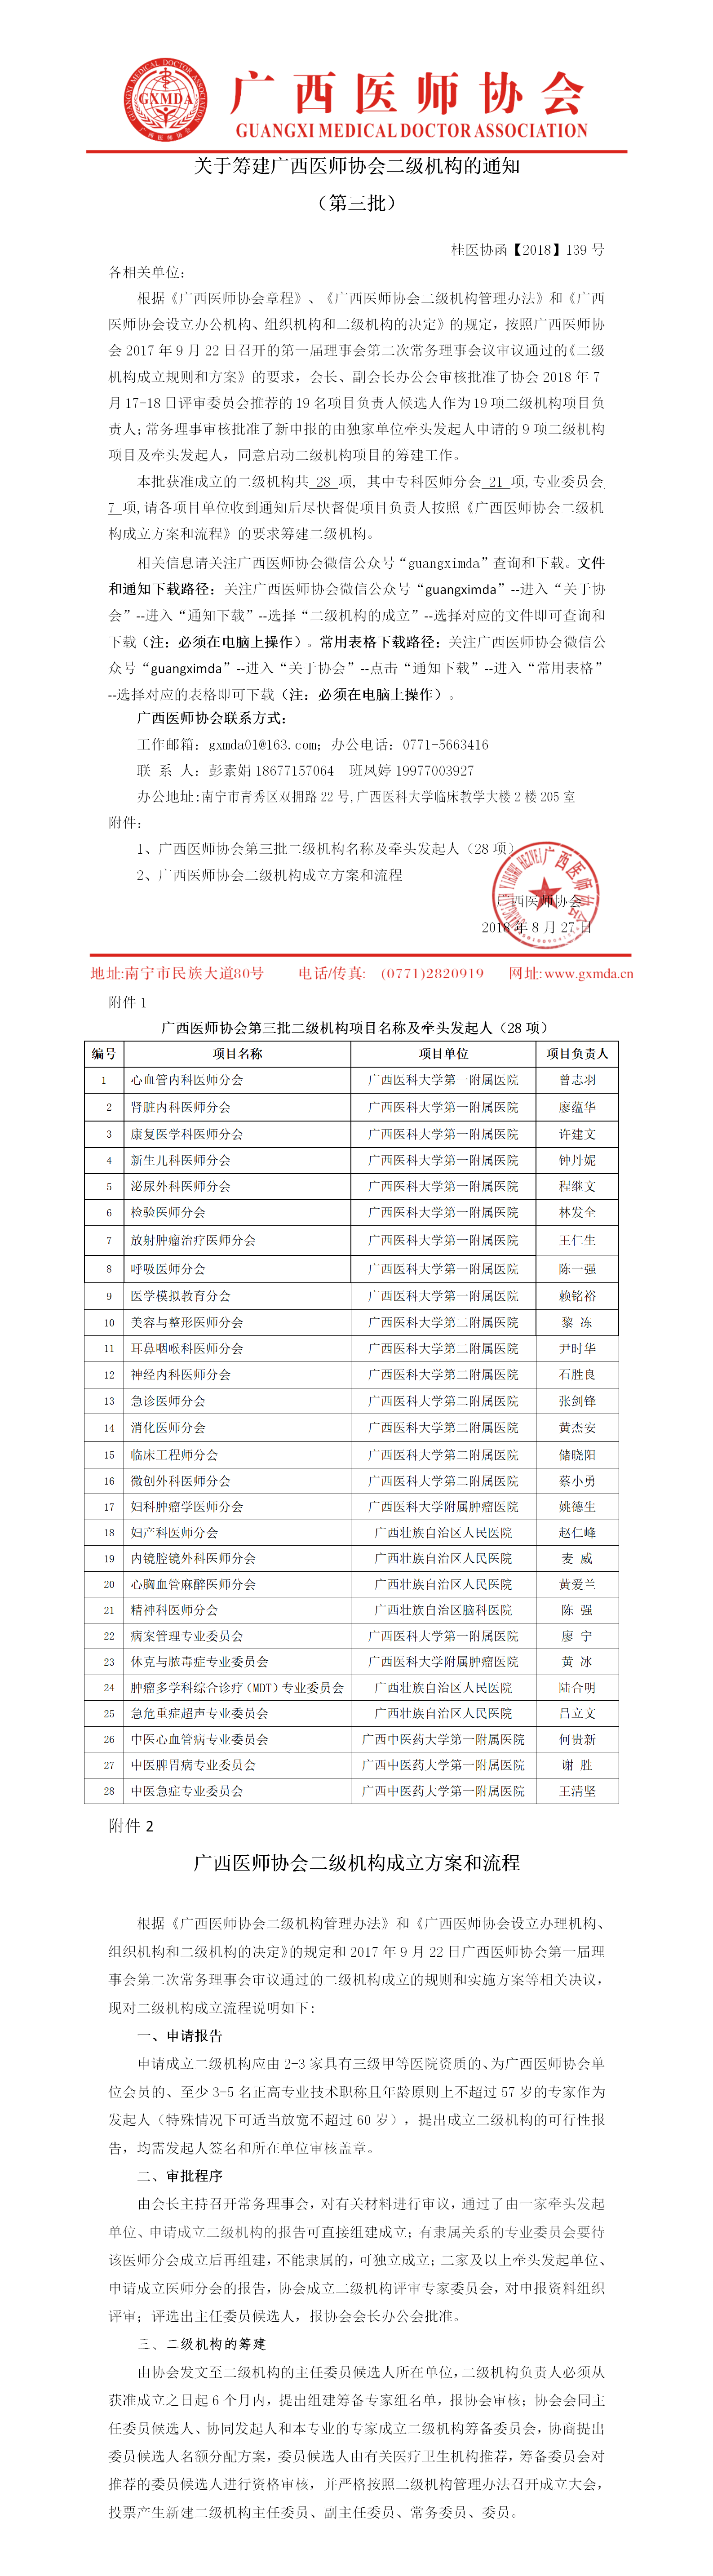 【2018】139号 关于筹建广西医师协会二级机构的通知（28项第三批微信版）.png